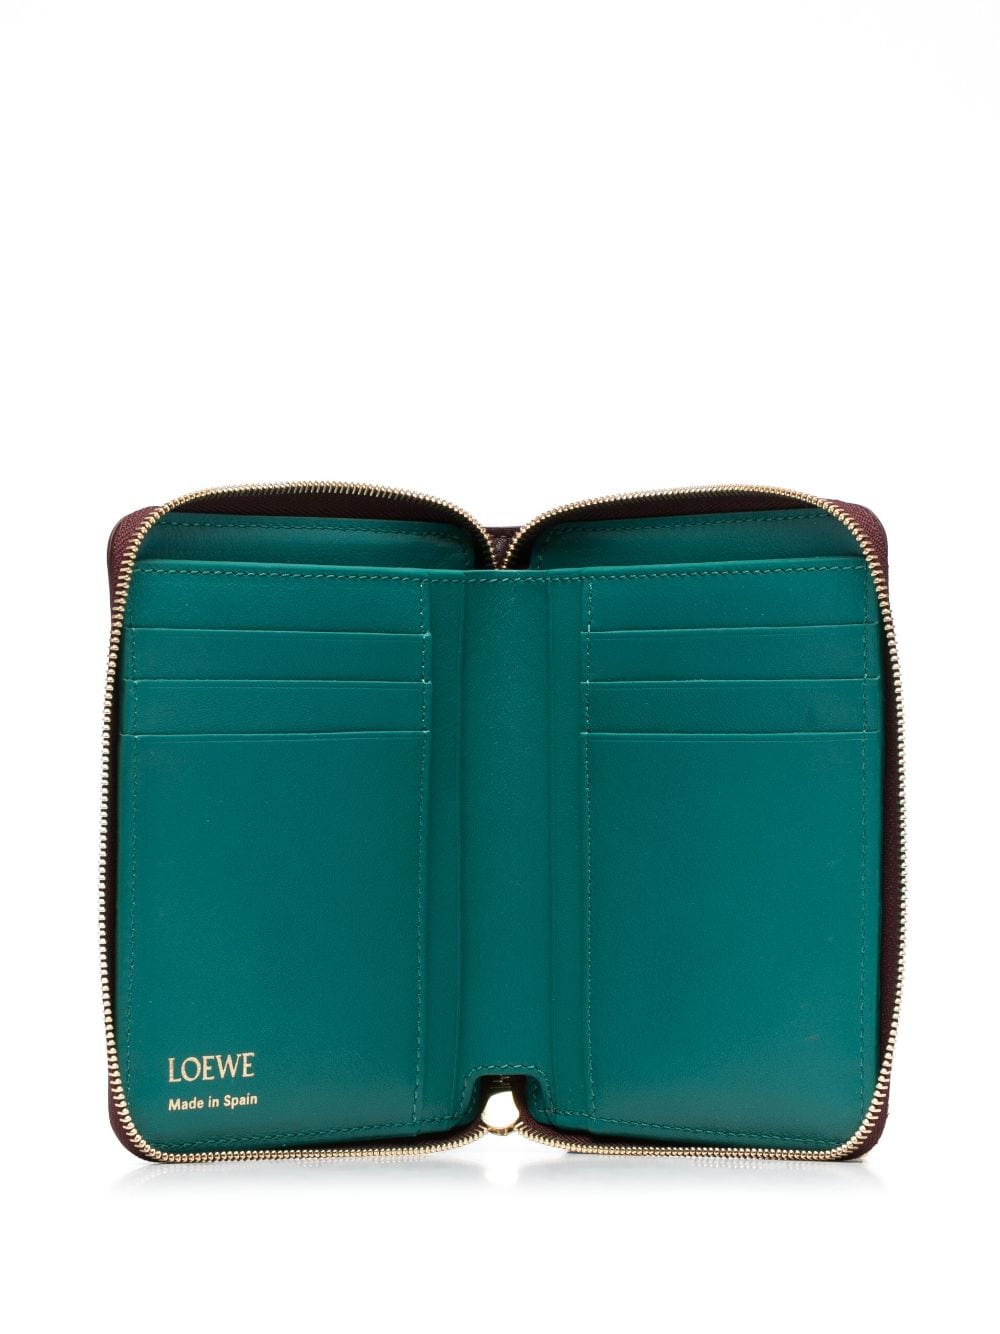 Loewe LOEWE- Knot Leather Compact Zip Wallet